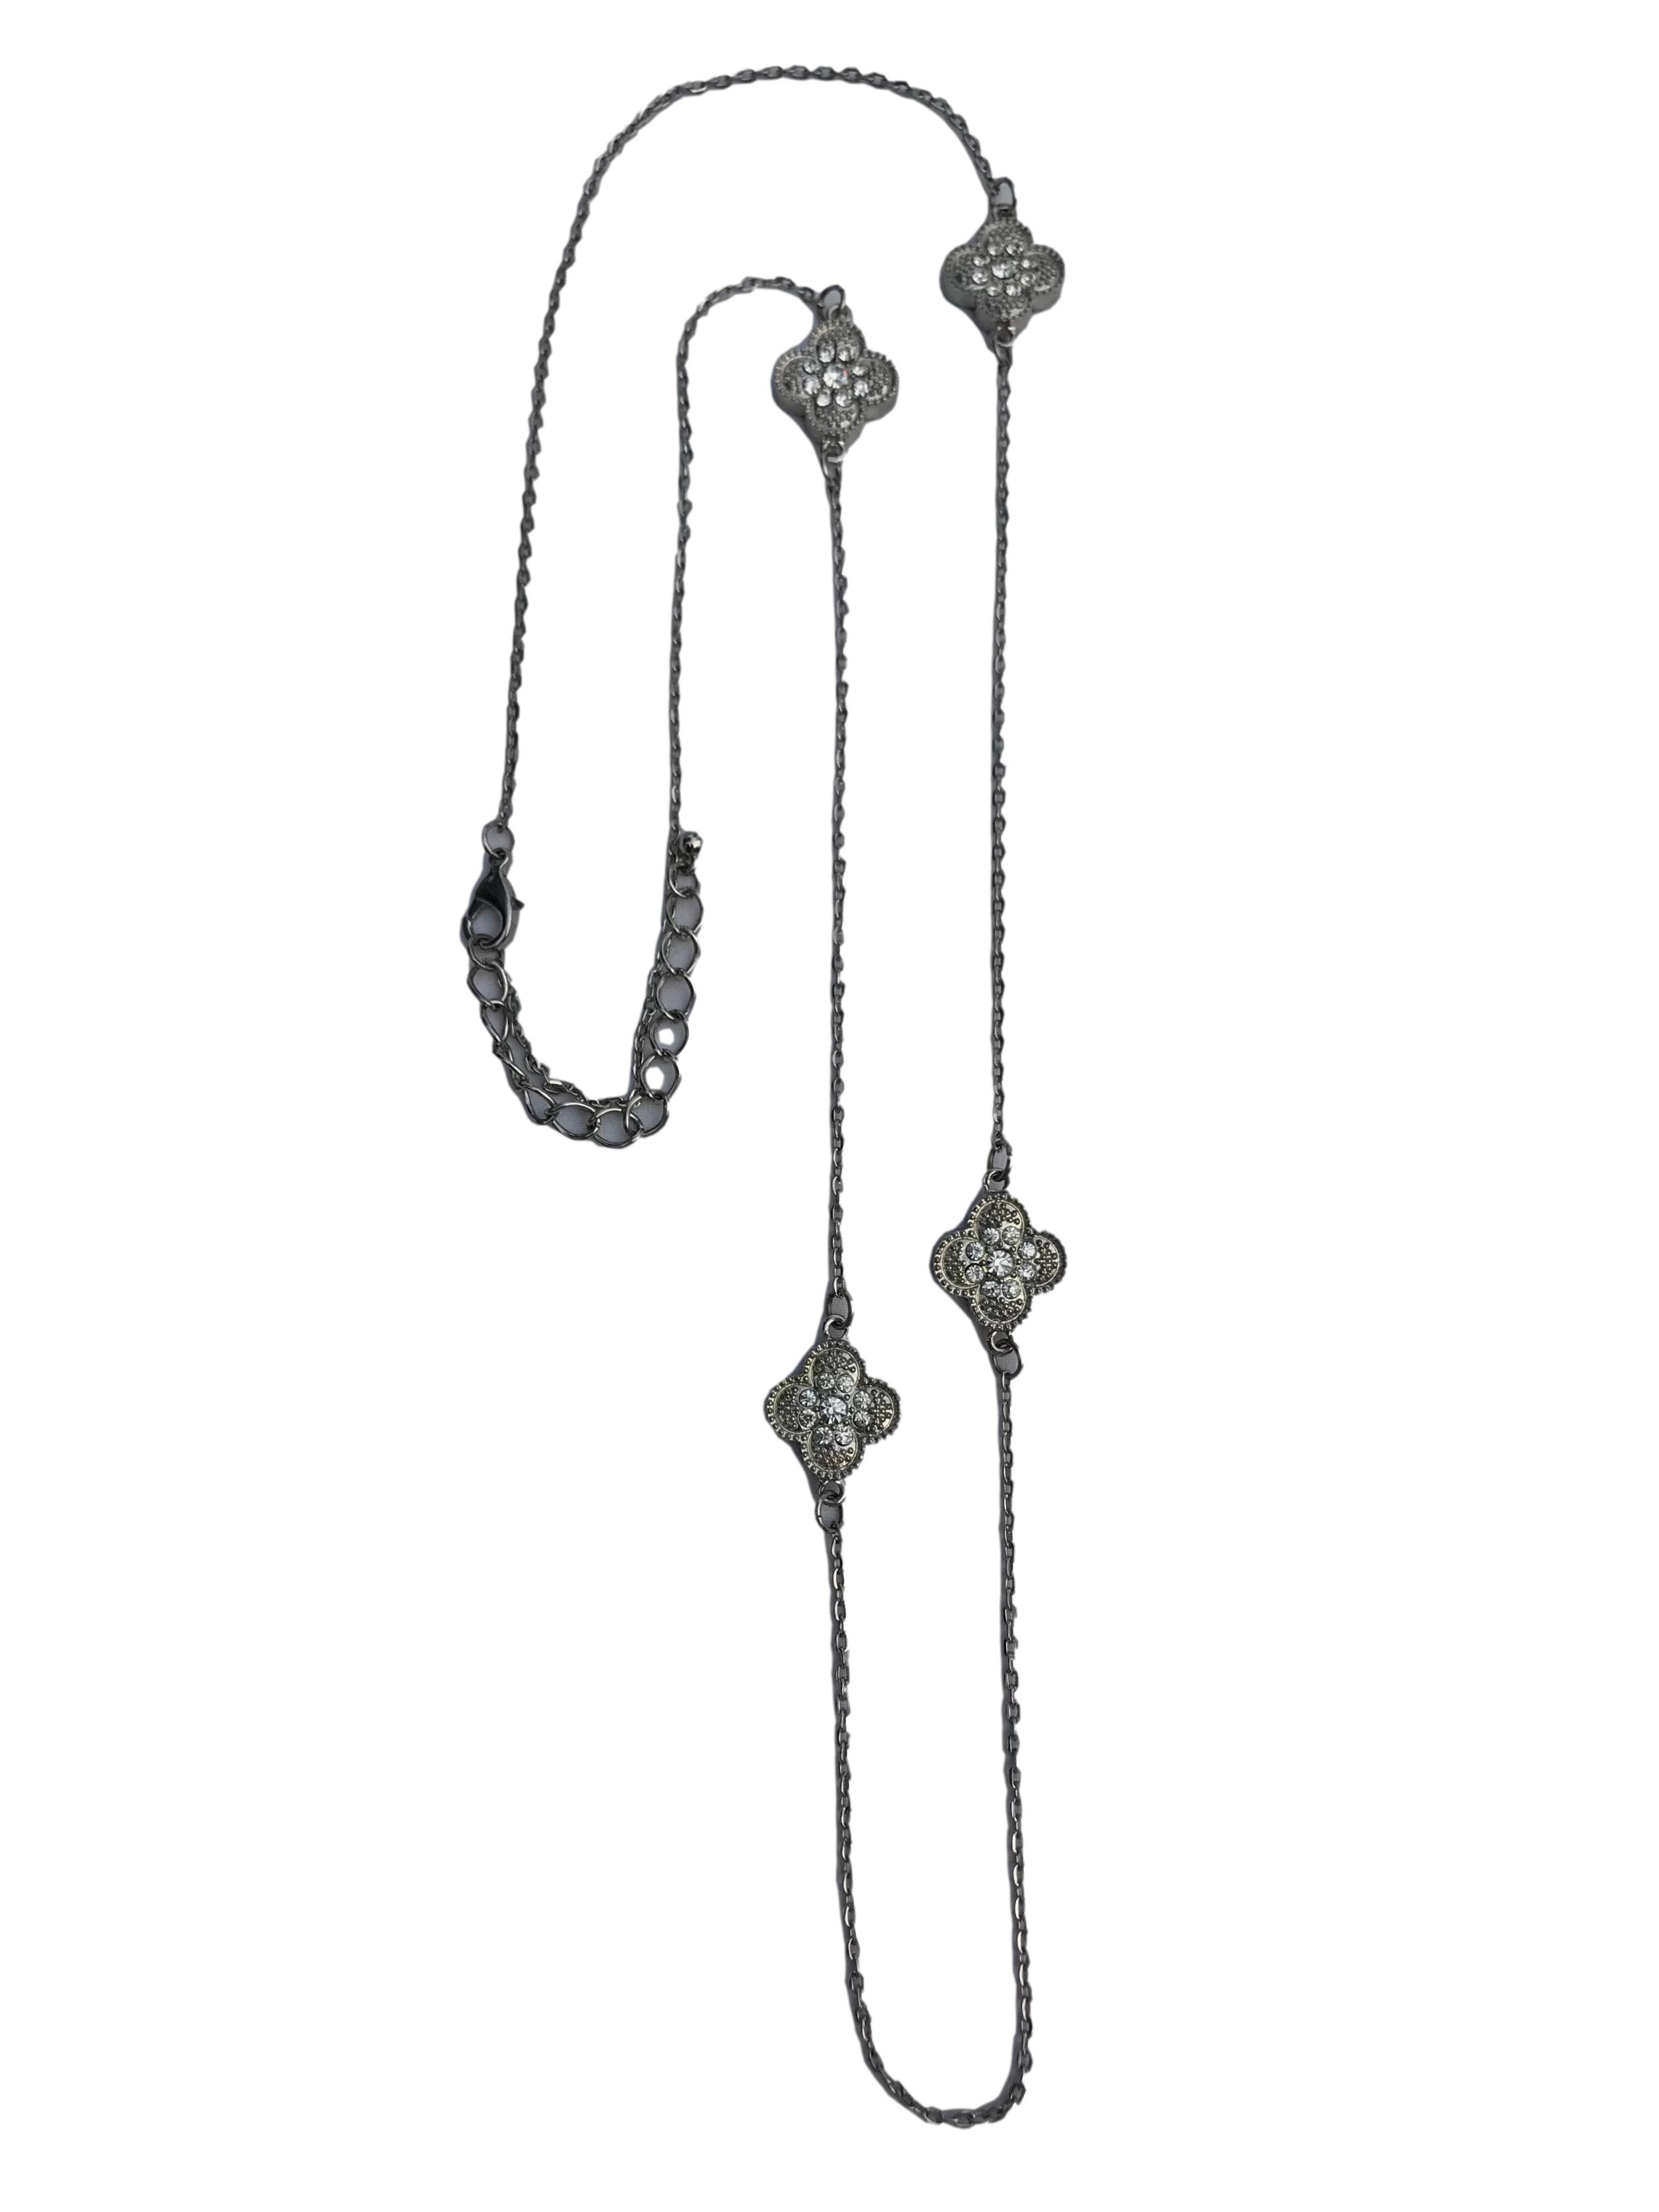 Collar cadena plateado con dijes flor e incrustaciones tipo diamante. Largo 90cm